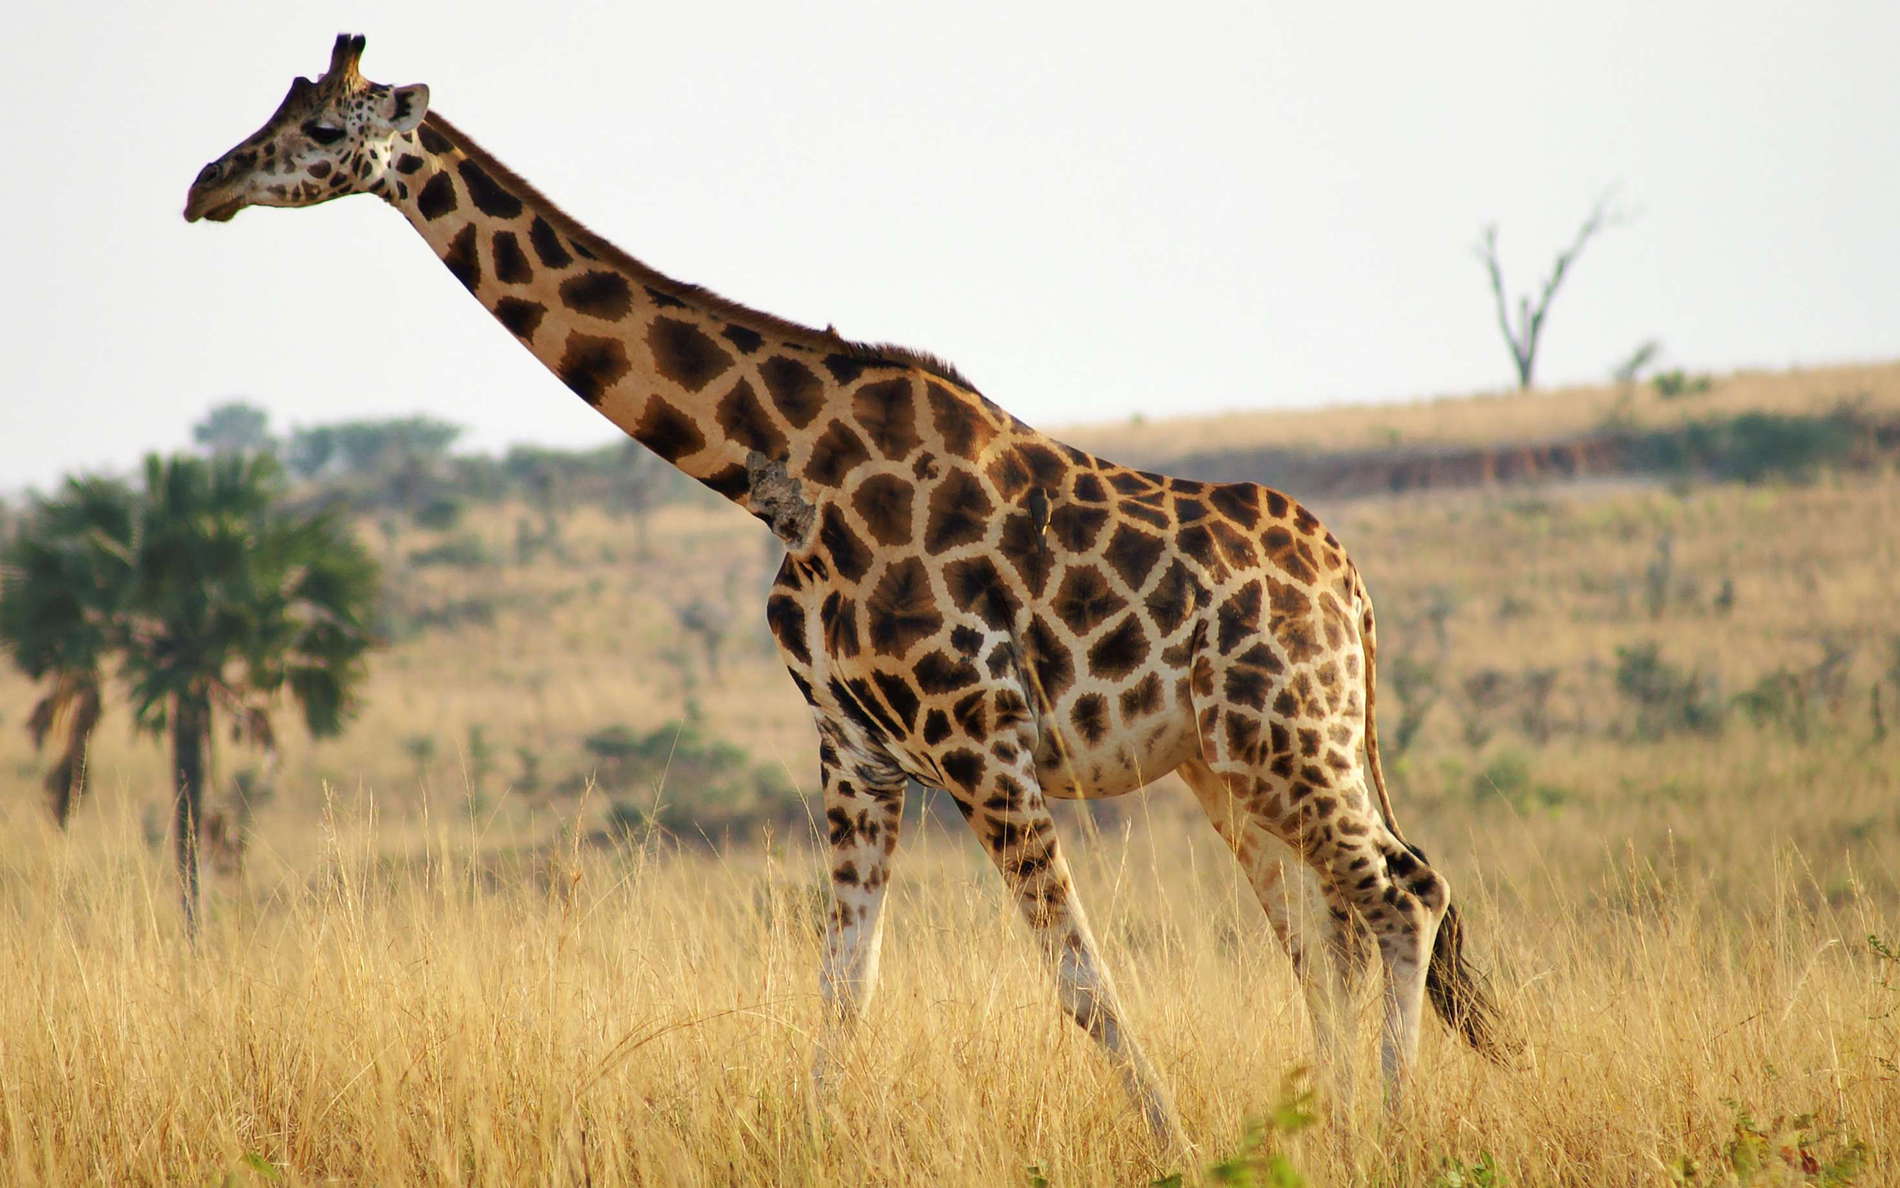 Murchison Falls NP  |  Rothschild's giraffe